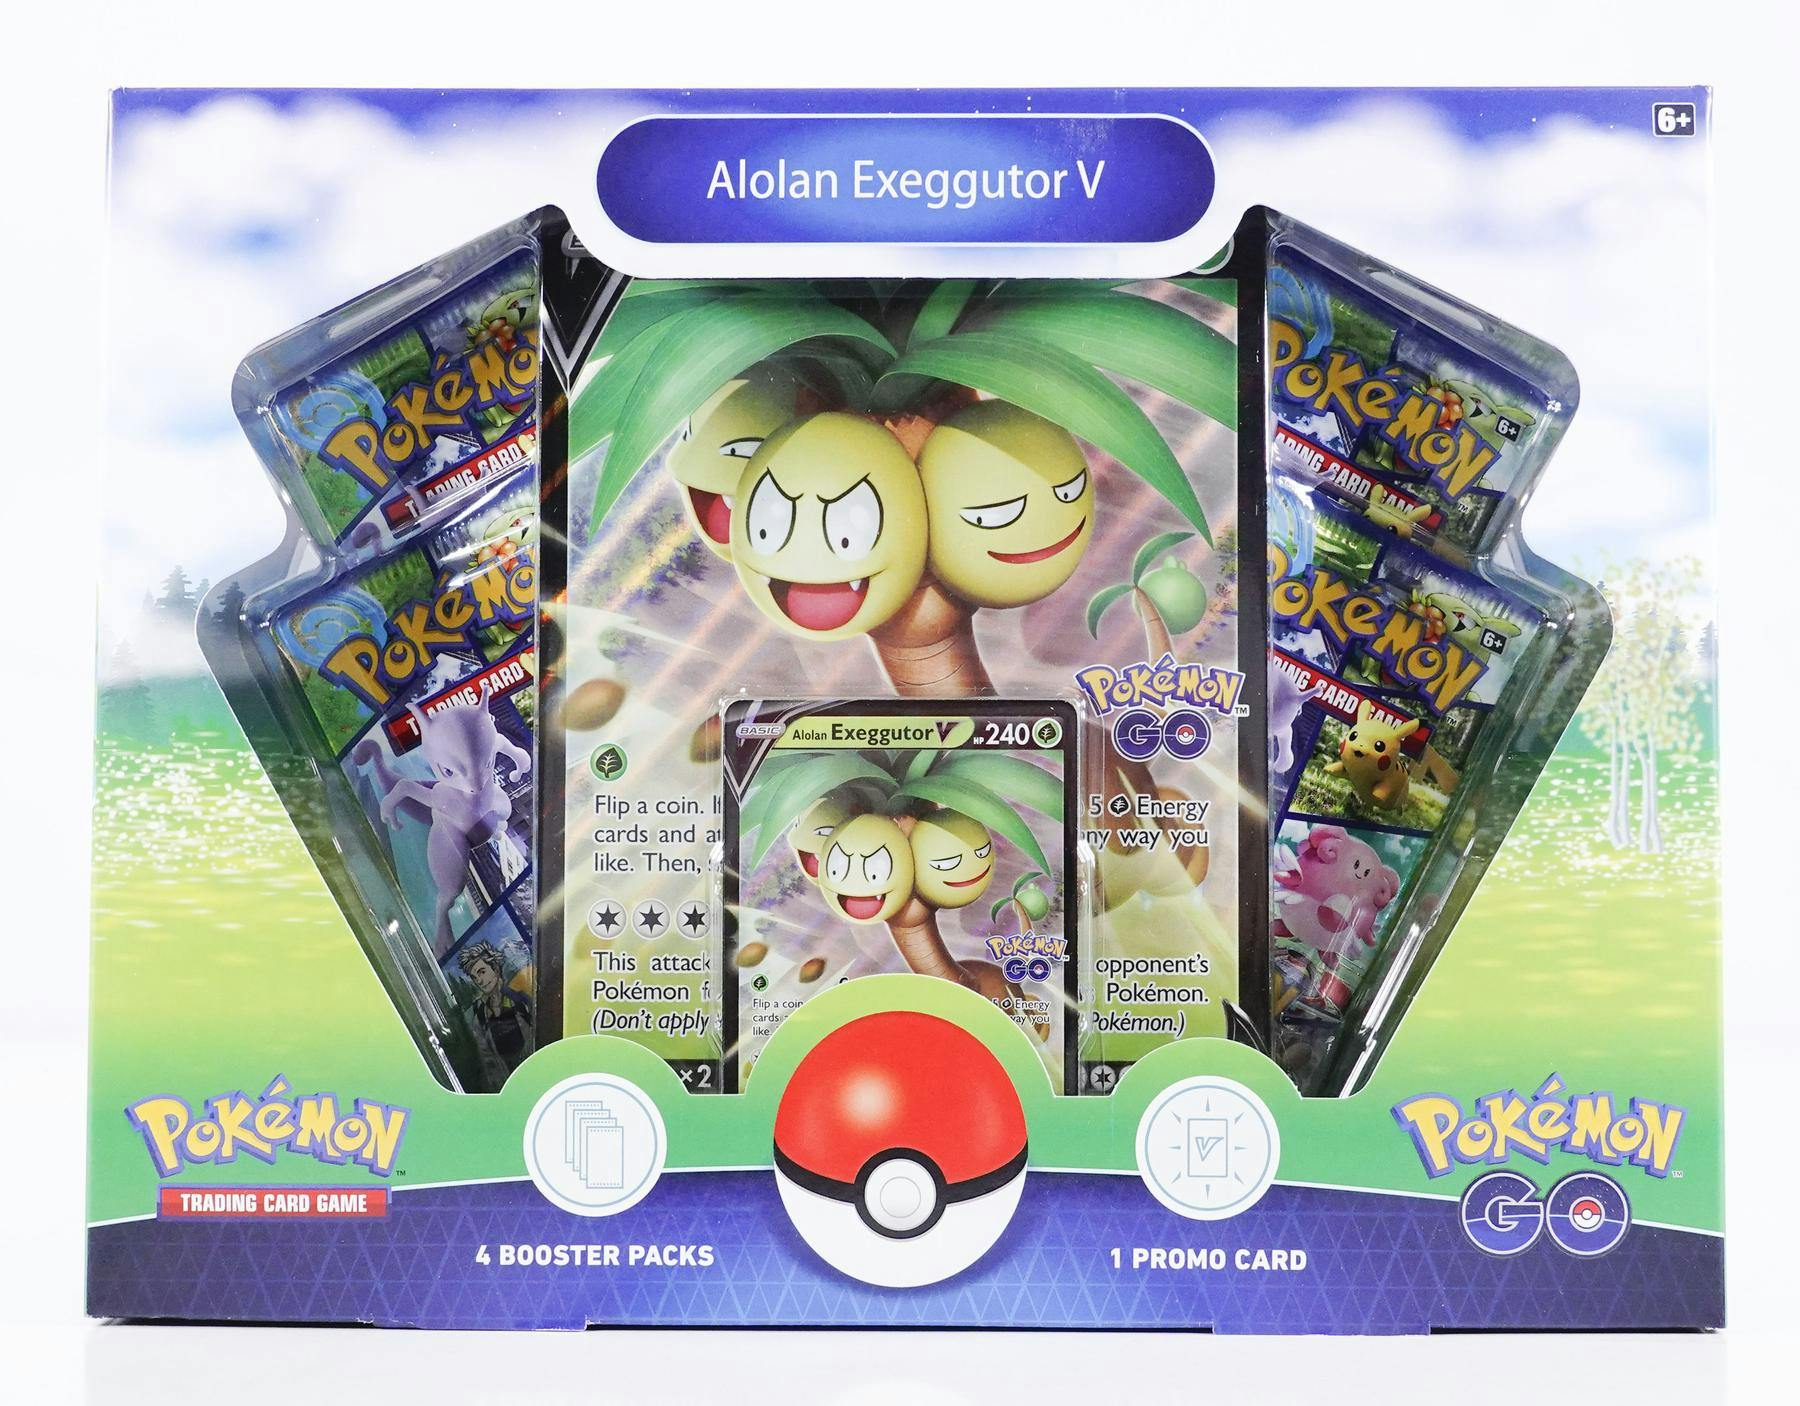 Box Coleção Pokémon Go - Exeggutor de Aalola-V Card Games Colecionáveis